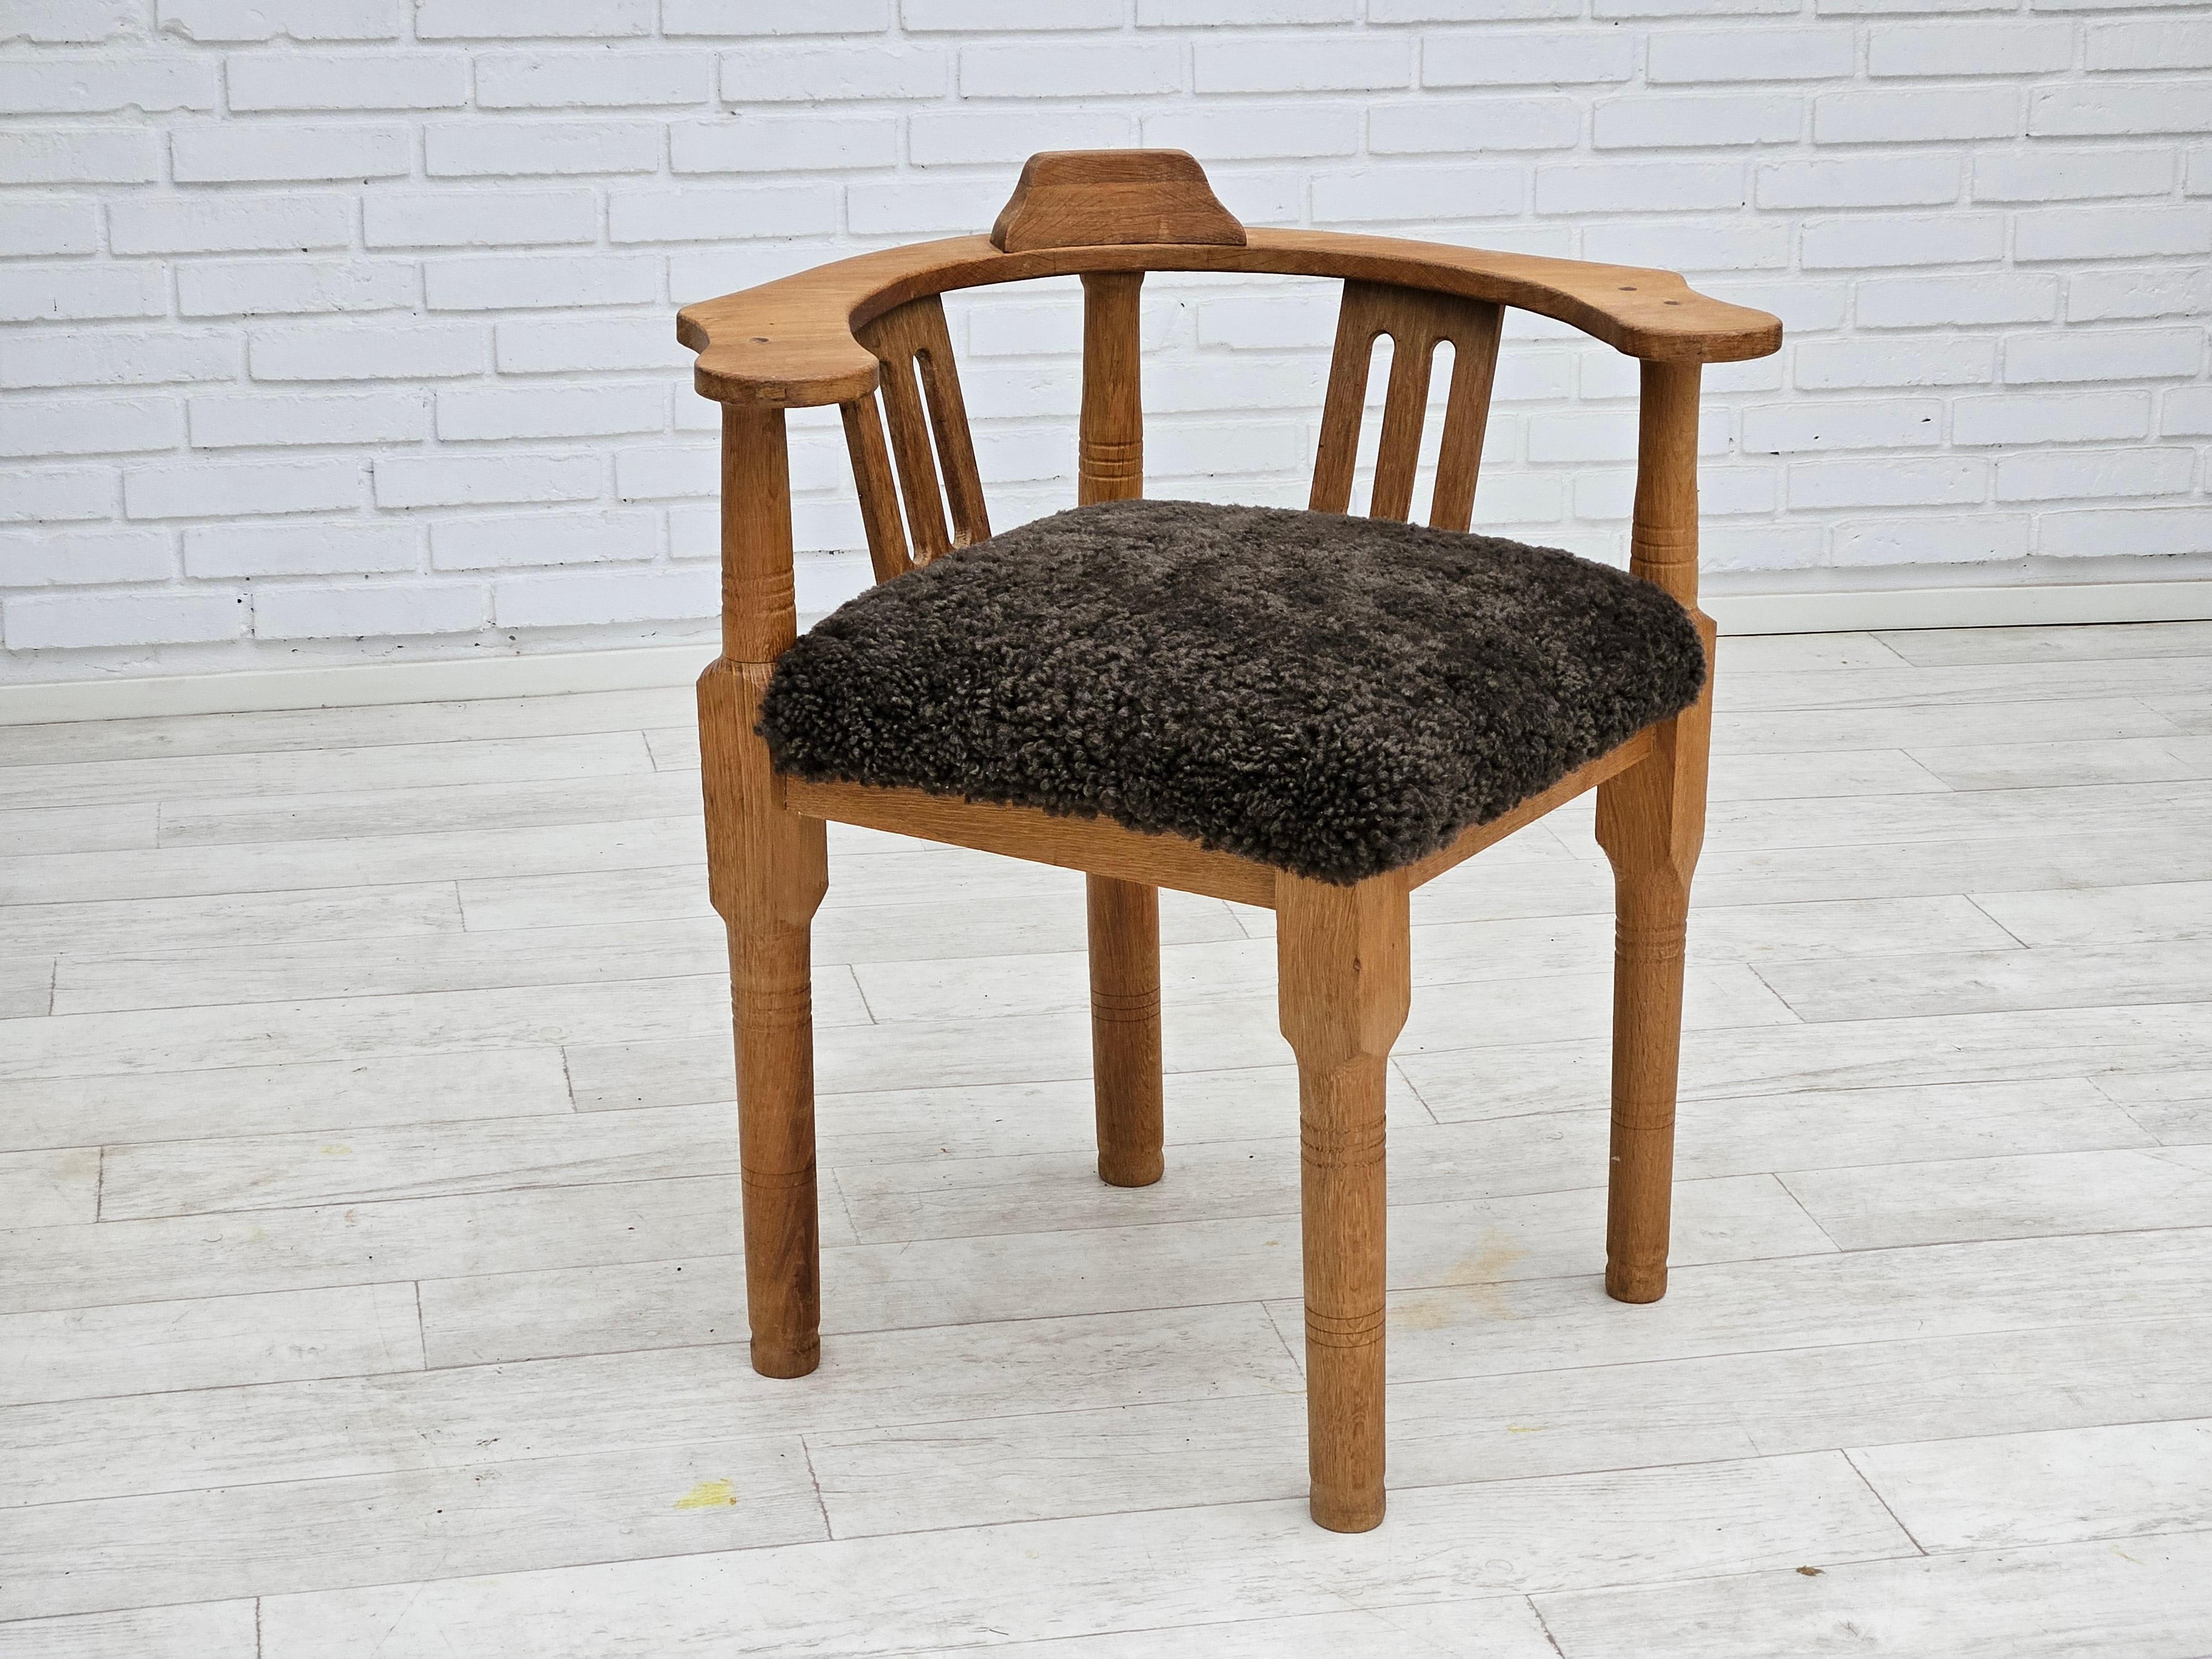 Scandinavian Modern 1950s, Danish design, reupholstered armchair, New Zealand sheepskin, oak wood. For Sale